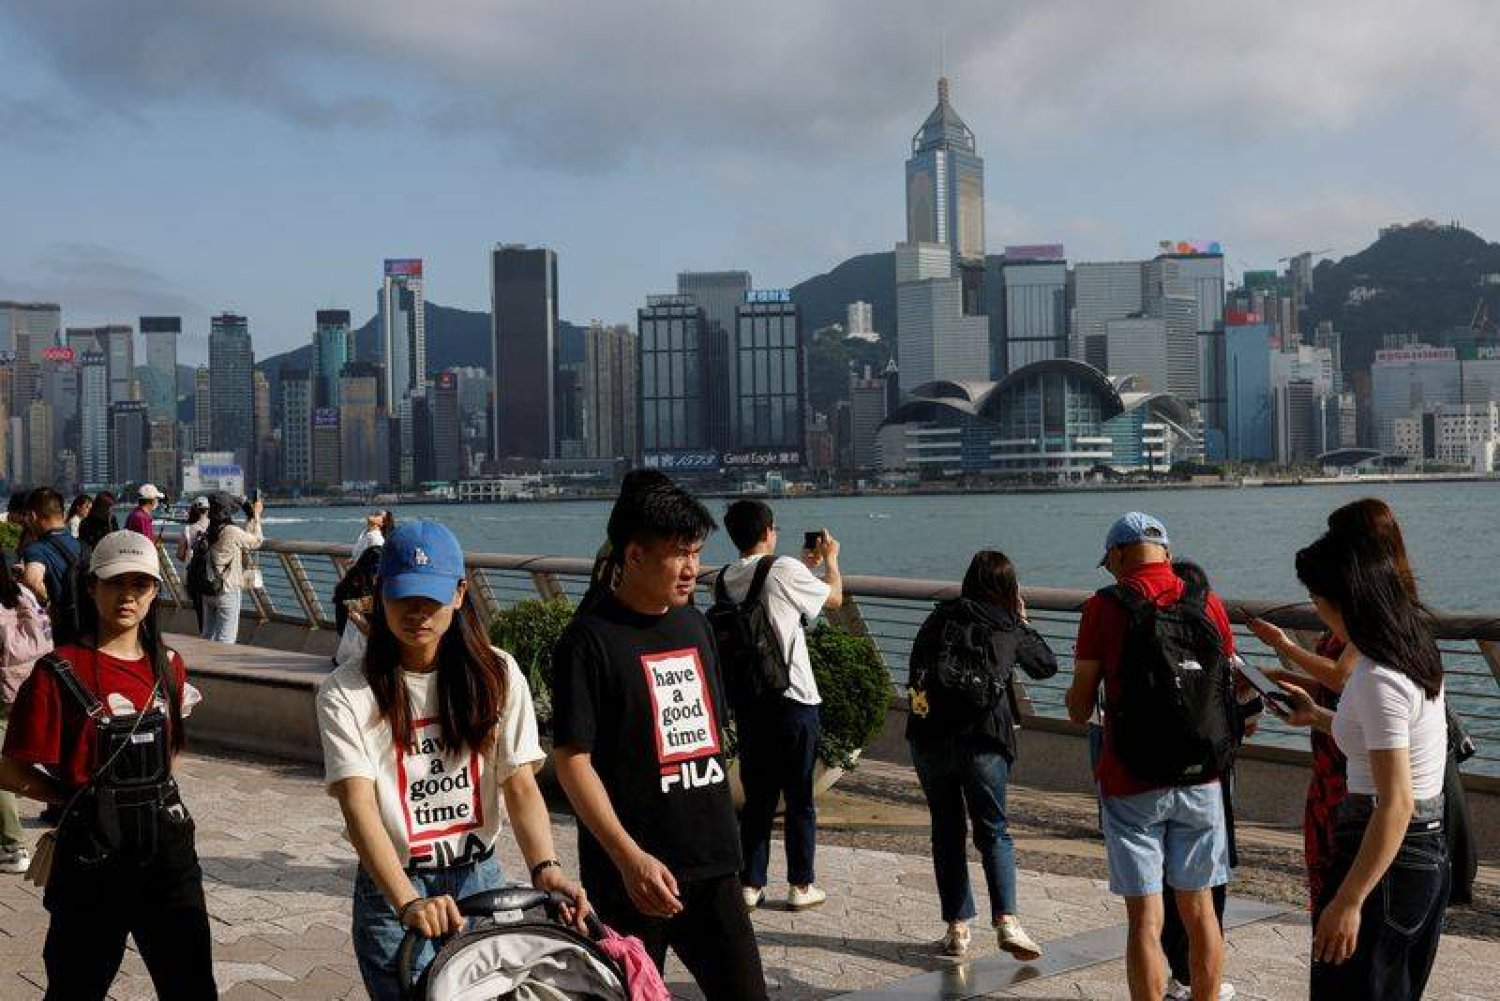 سياح صينيون من البر الرئيسي يسيرون أمام أفق المباني في تسيم شا تسوي بهونغ كونغ بالصين (رويترز)